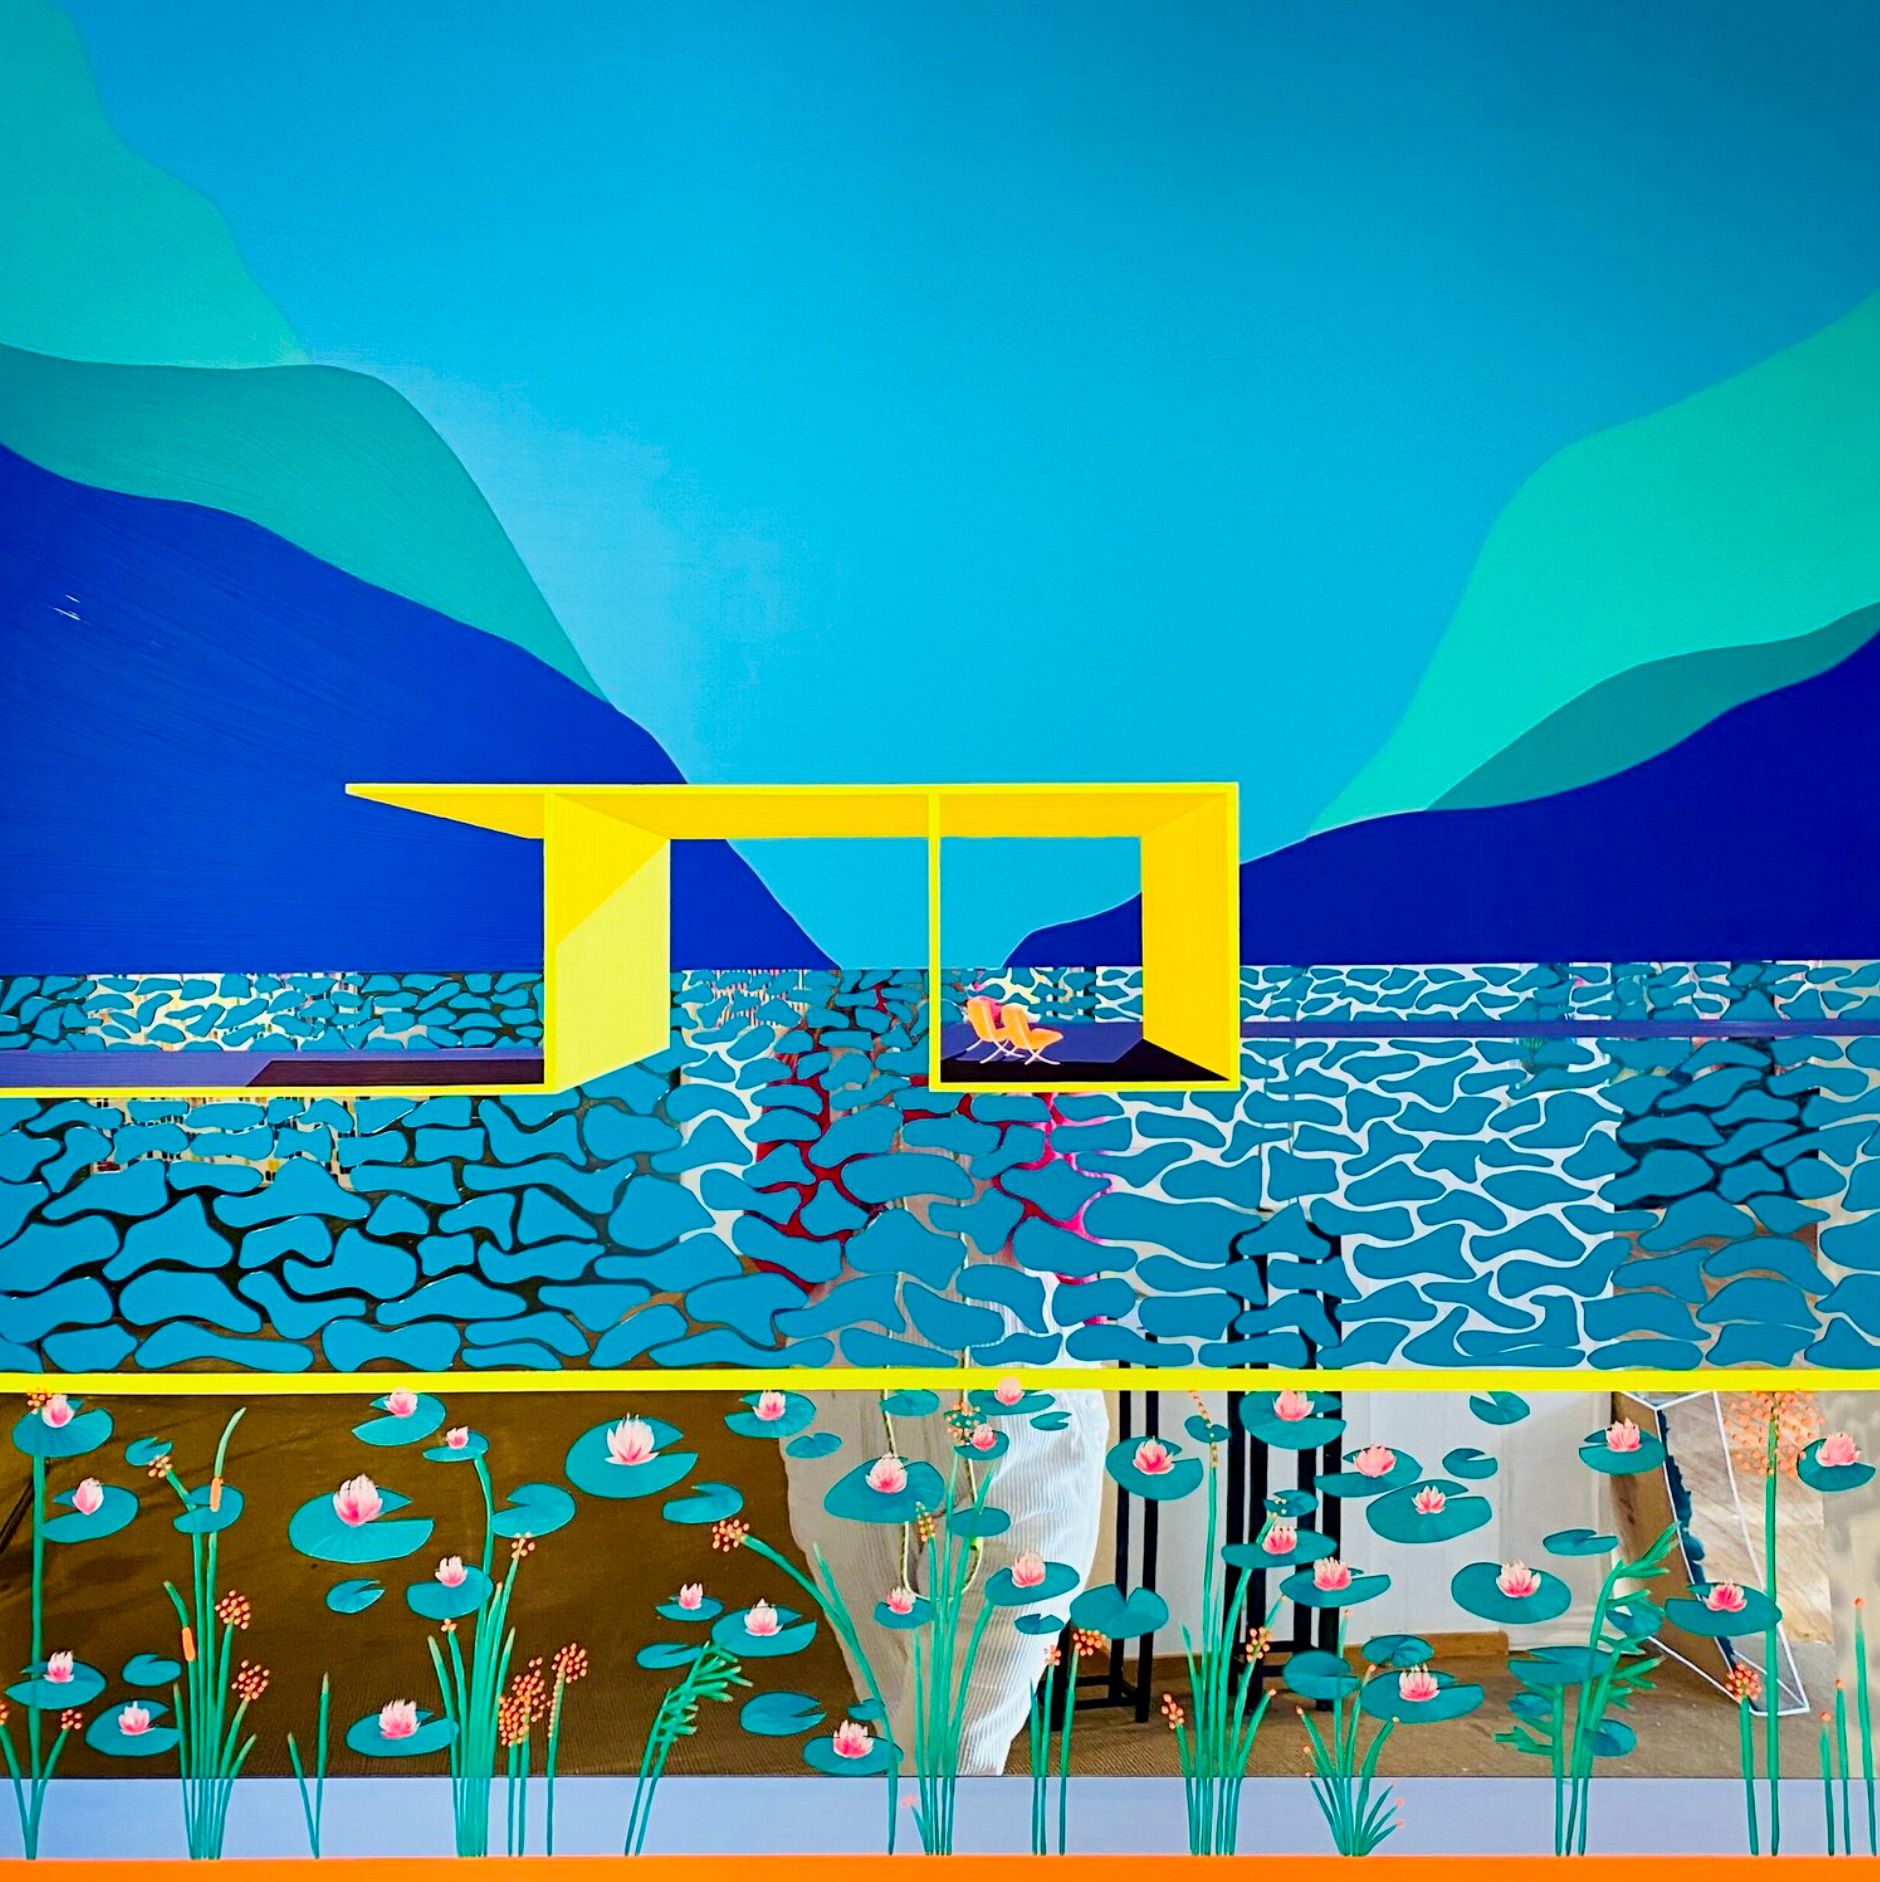 Isabelle Derecque, "Les nénuphars" Pintura colorista, pintada en un misterioso lugar coloreado sobre espejo plexi en estilo pop-up con colores alegres y enérgicos. Visualizado a través de la geometría, las perspectivas, los contrastes y los reflejos.